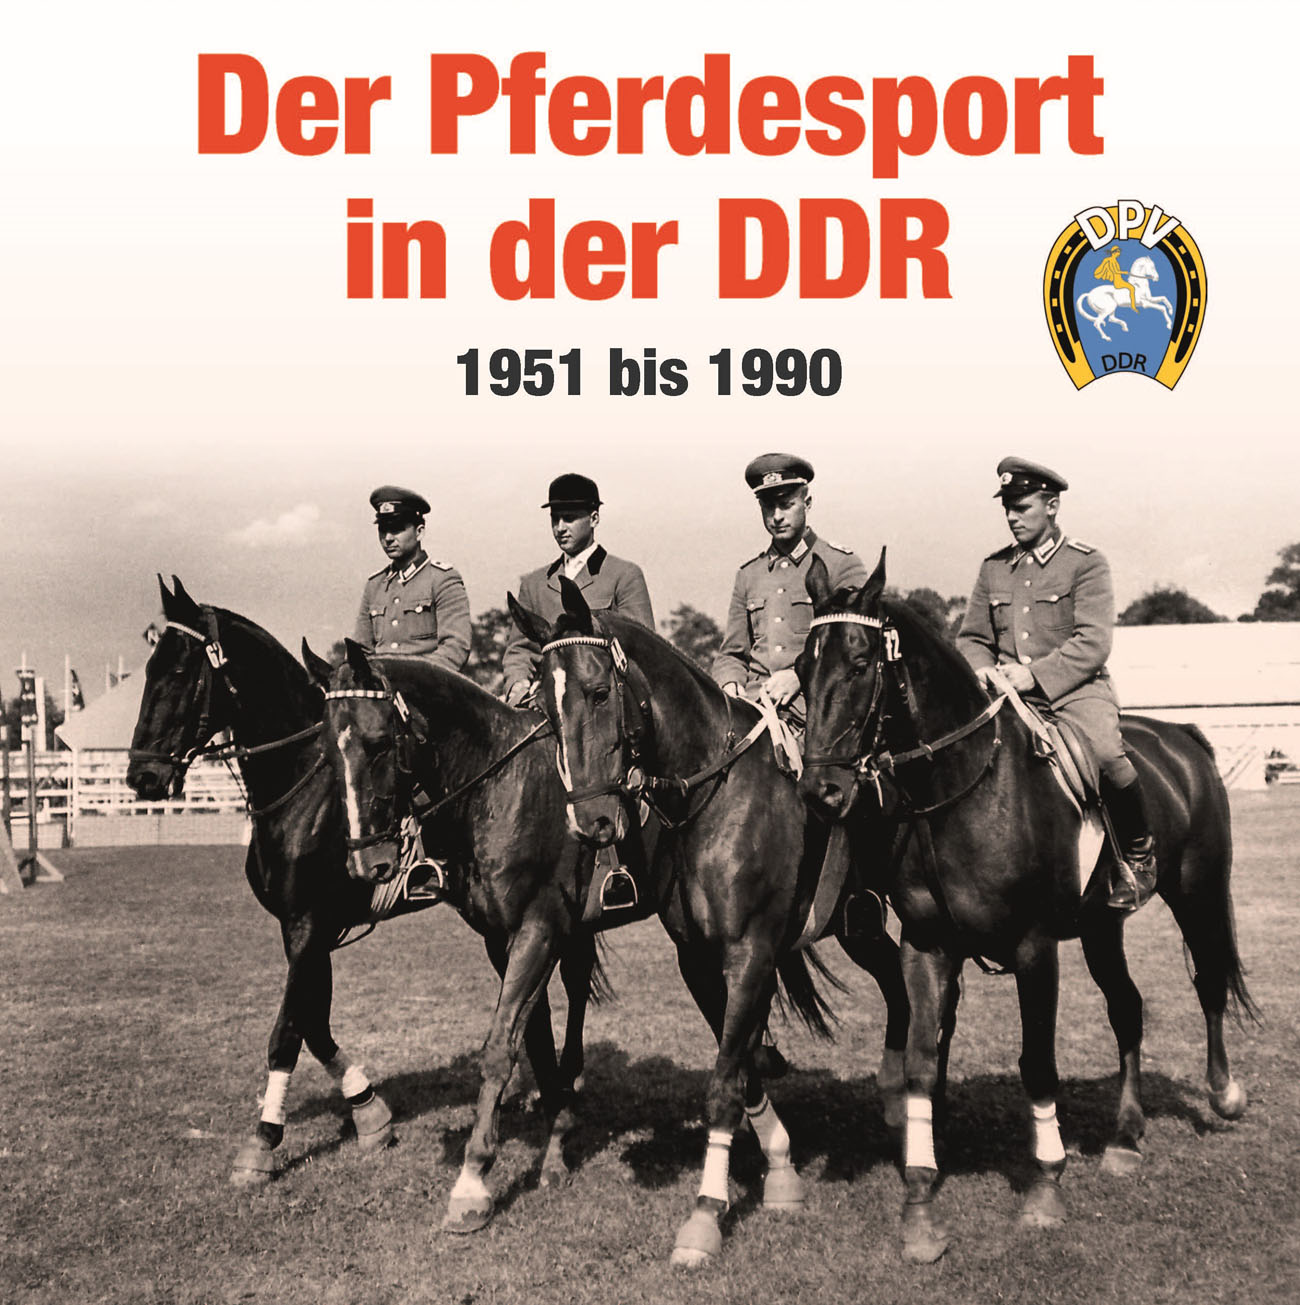 Der Pferdesport in der DDR - 1951 bis 199